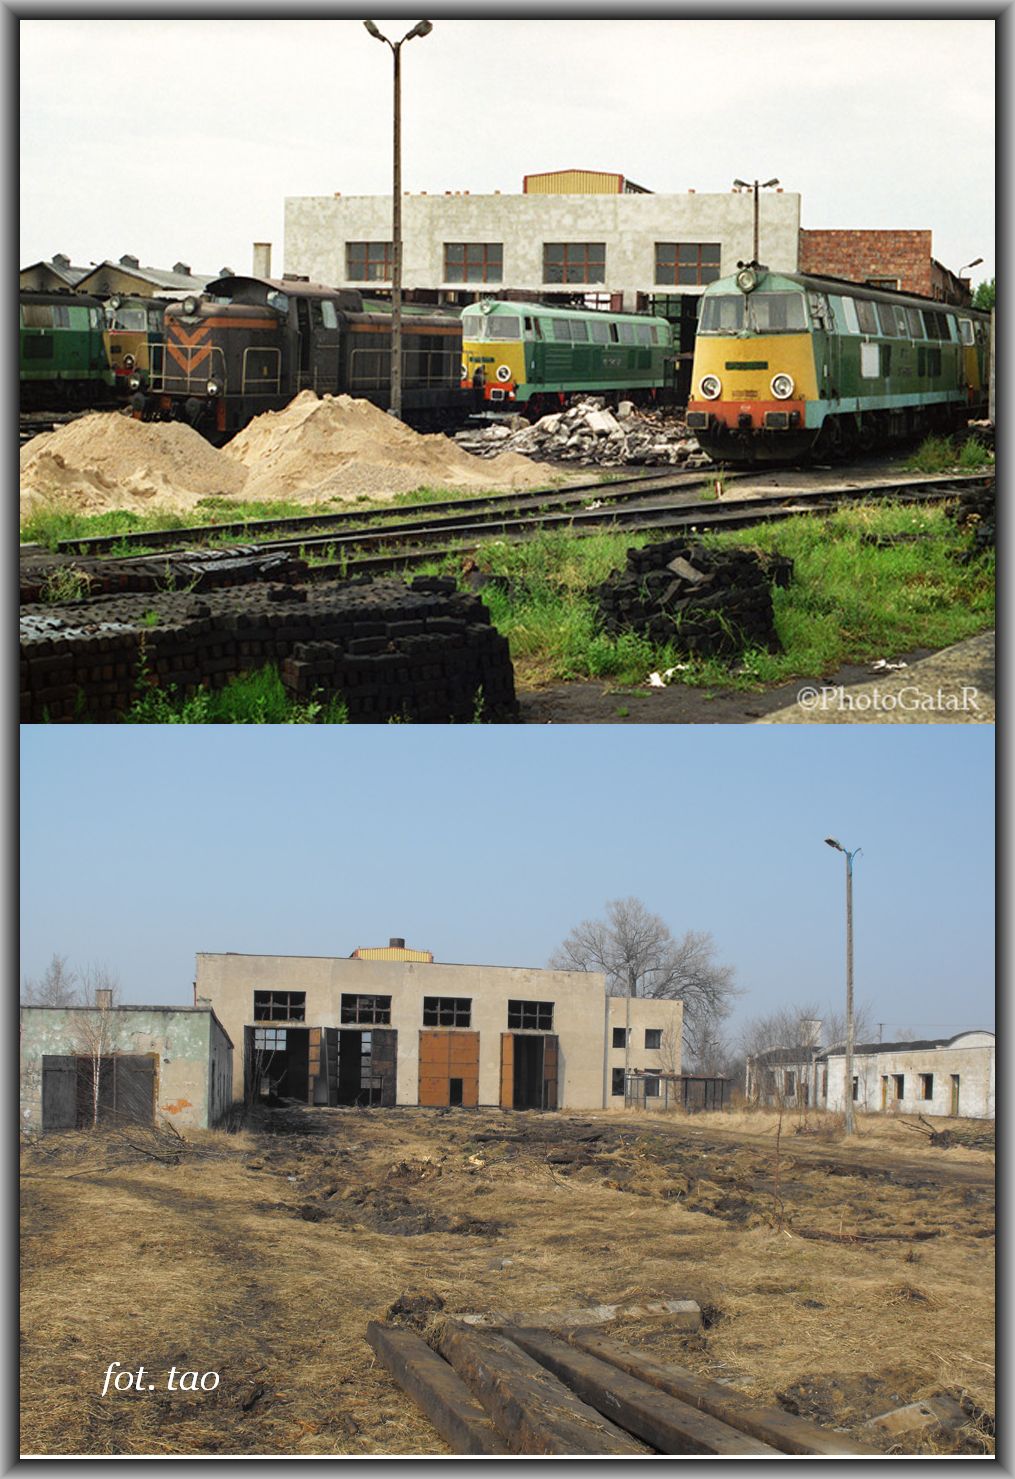 Lata 90. XX wieku to nagła rozbudowa lokomotywowni w celu szybkiej obsługi taboru spalinowego. Foto u dołu to lokomotywownia w 2012 roku i podobnie nagła, ale dewastacja.